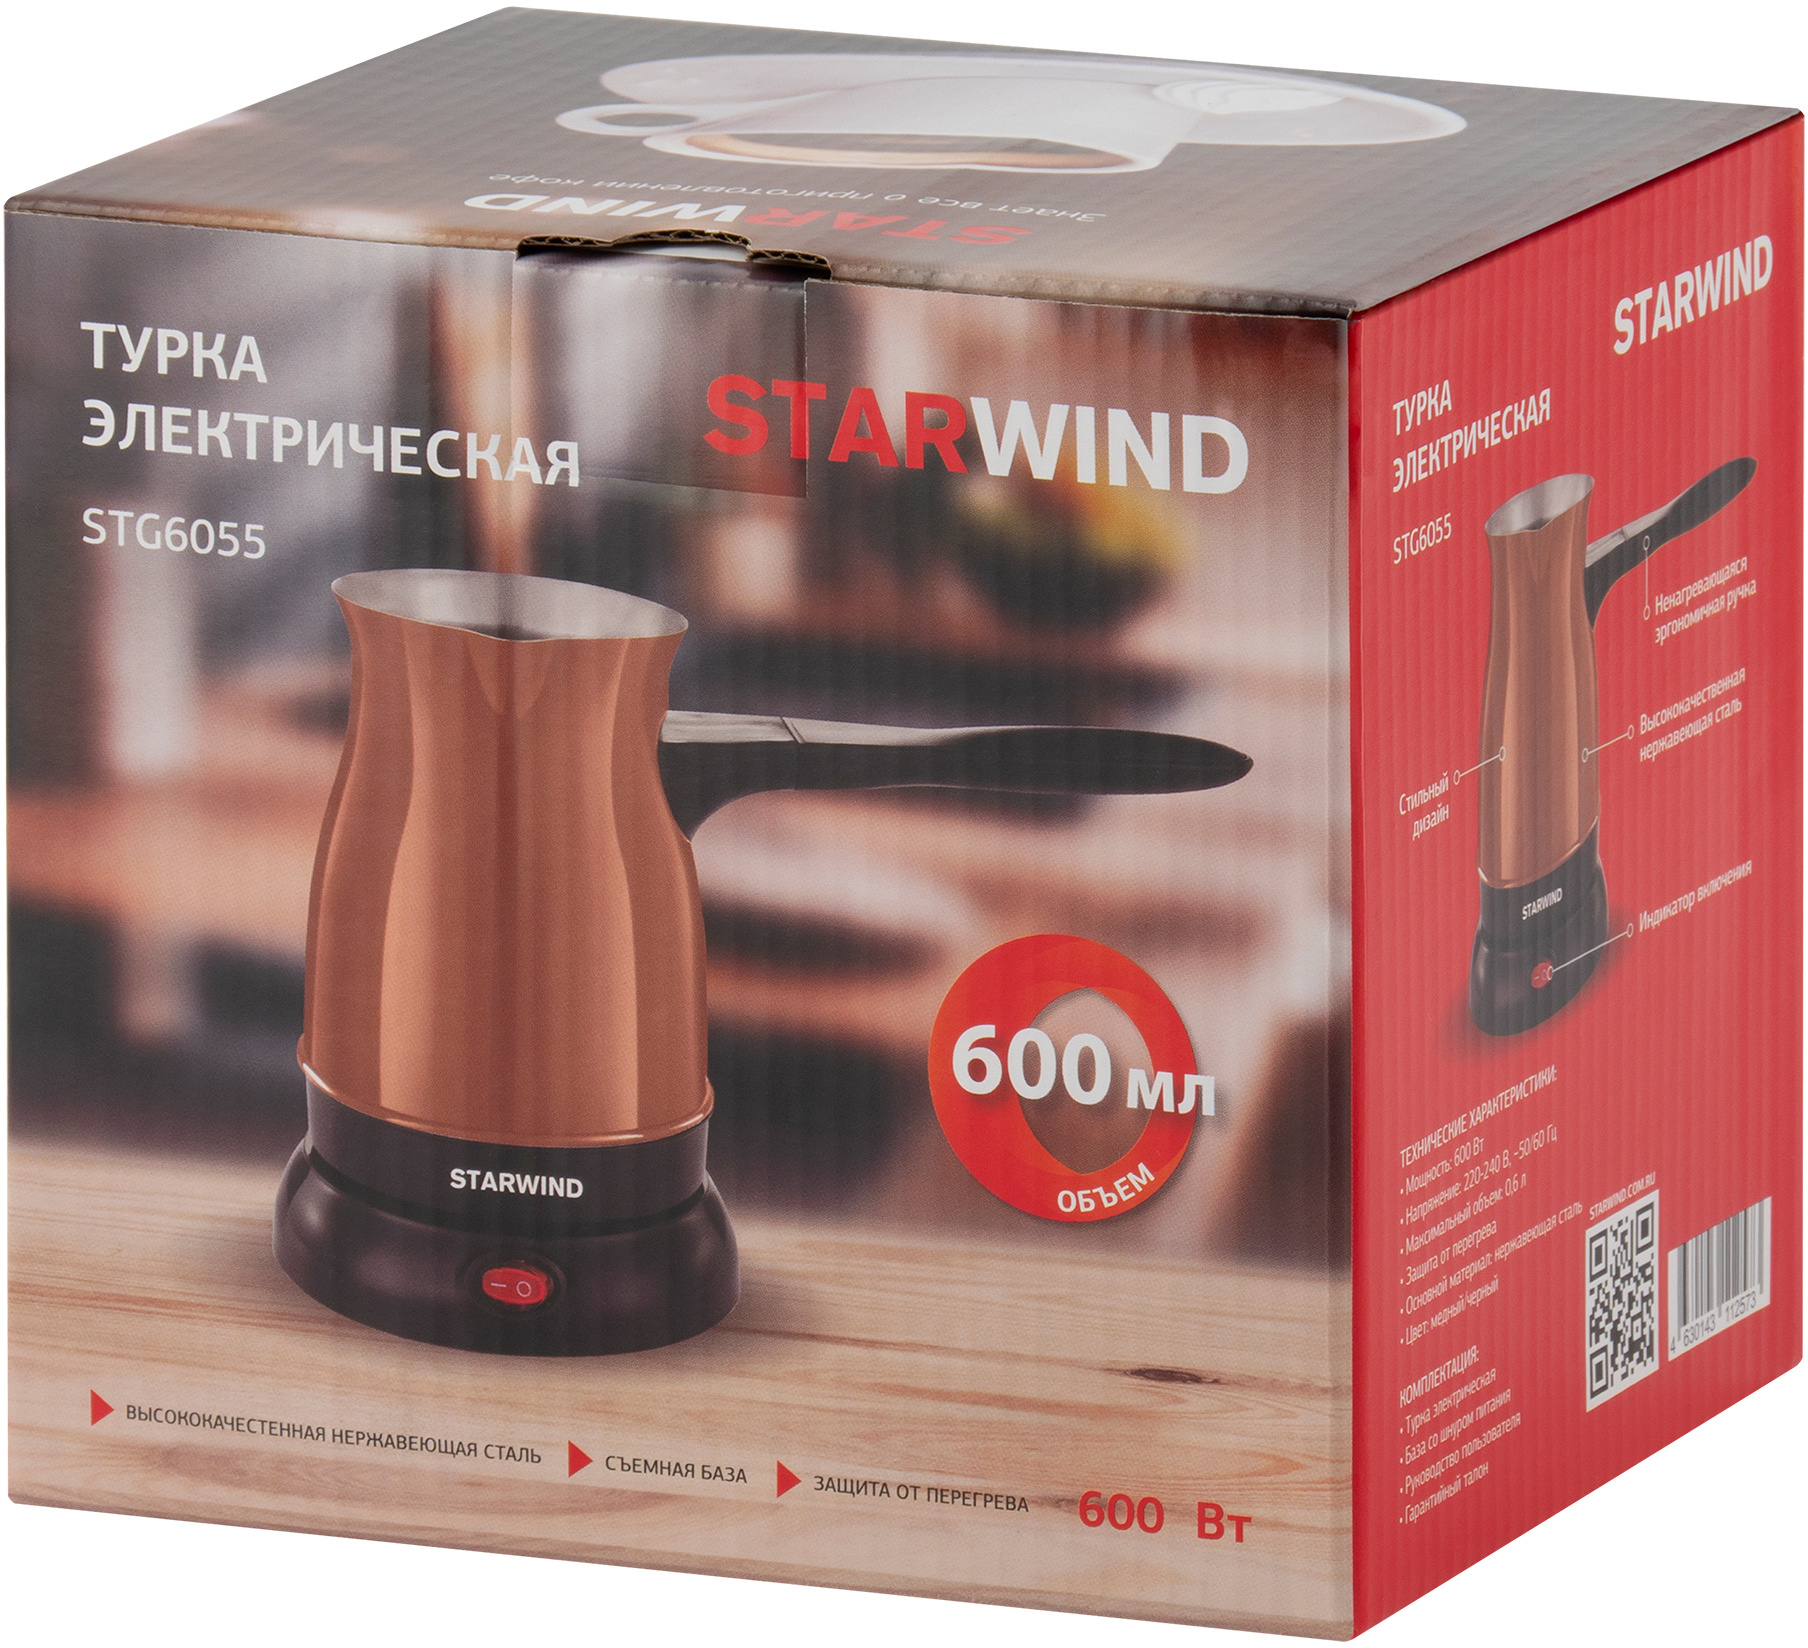 Кофеварка Электрическая турка Starwind STG6055 медный/черный от магазина Старвинд